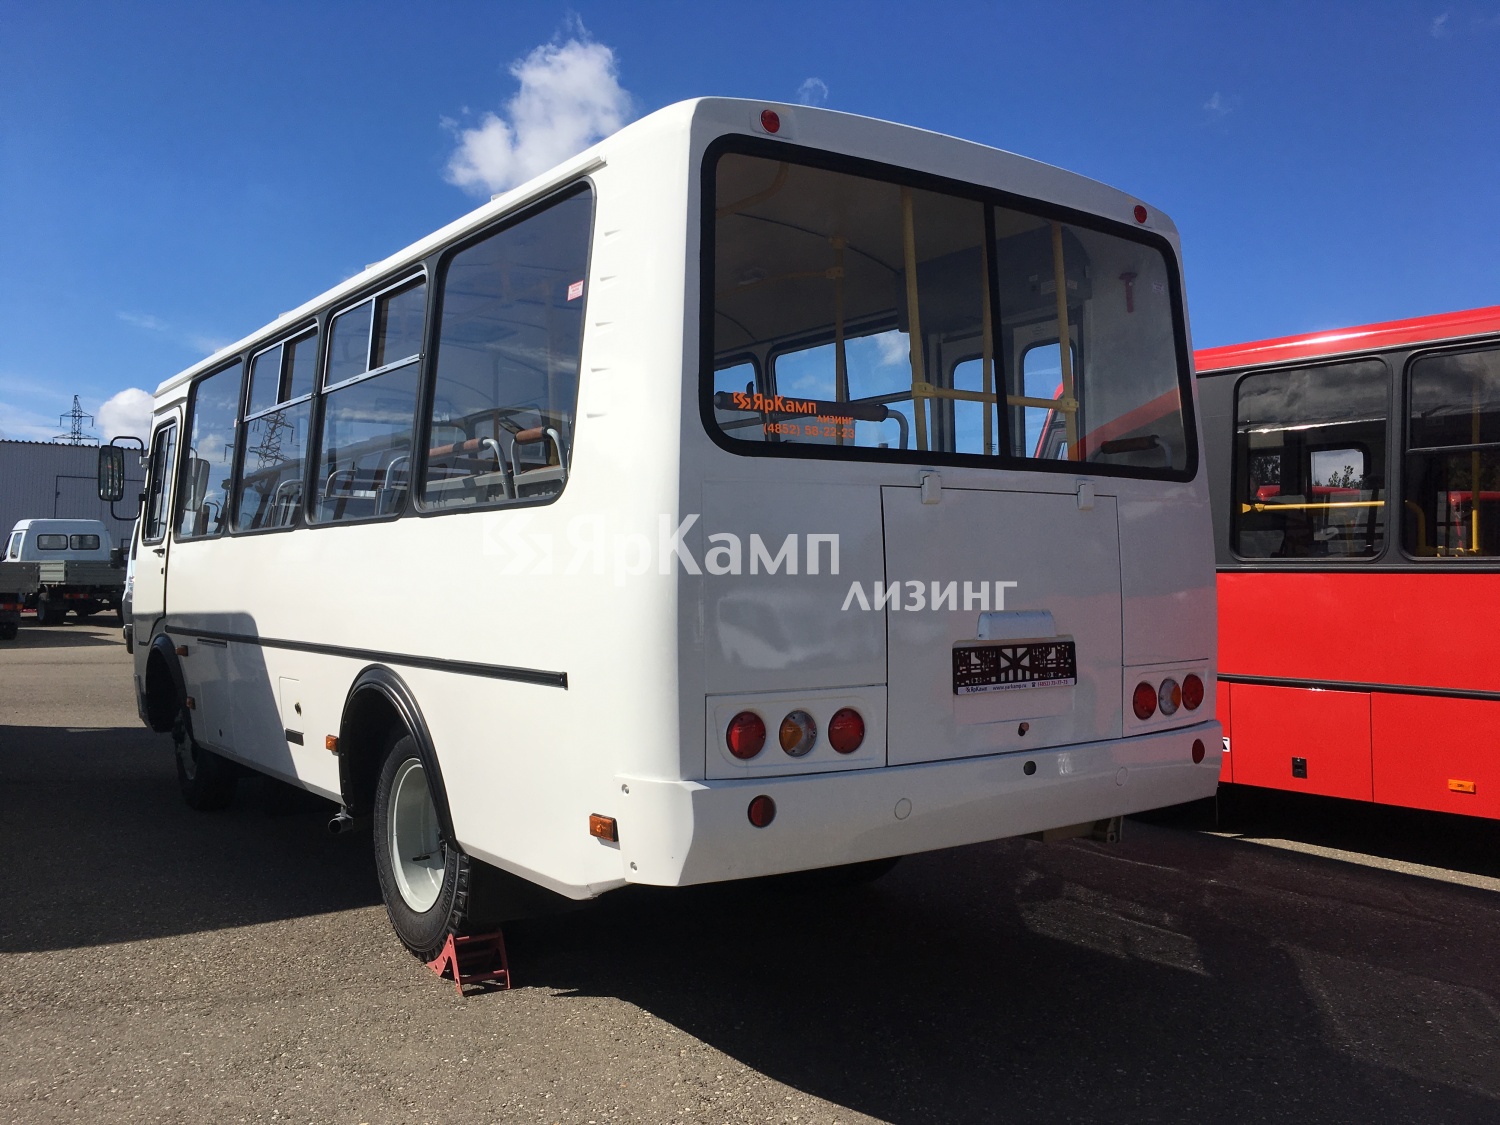 "ЯрКамп-Лизинг" осуществил отгрузку на правах финансовой аренды автобуса ПАЗ 32054